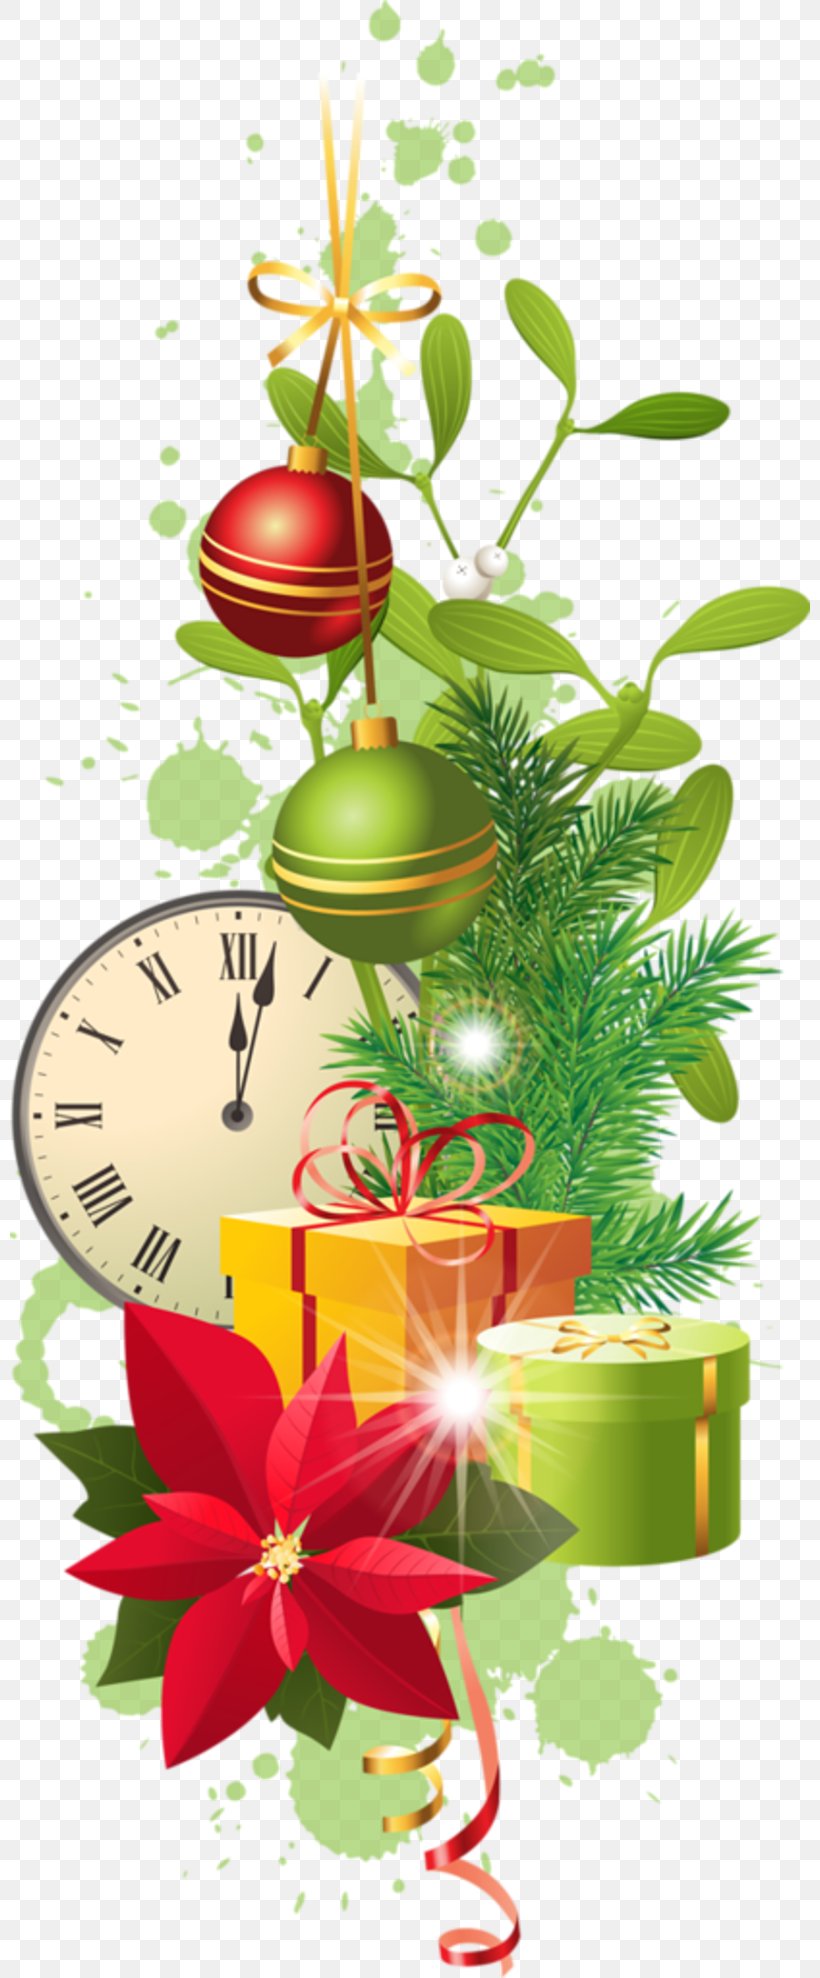 Stock Photography Christmas Card Christmas Tree, PNG, 800x1978px, Stock Photography, Branch, Christmas, Christmas Card, Christmas Decoration Download Free